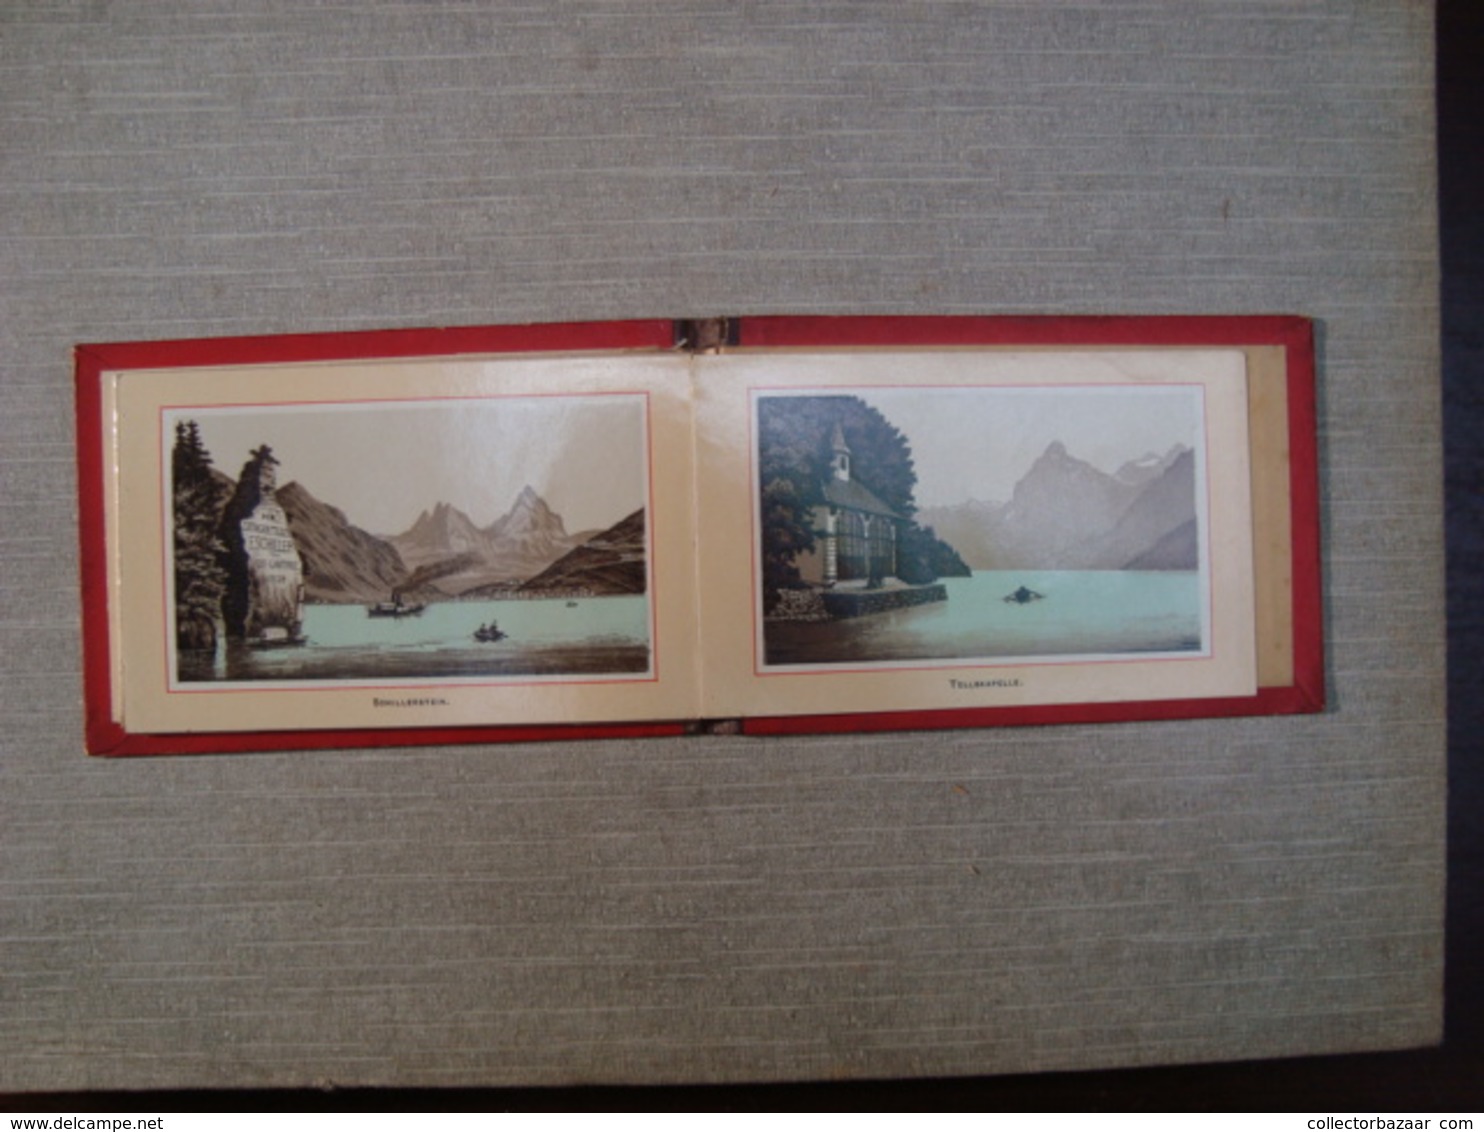 Album souvenir printed photographies ca1890 Righi Librairie C.F. Prell, Succ. A. Prell Lucerne Railway Train